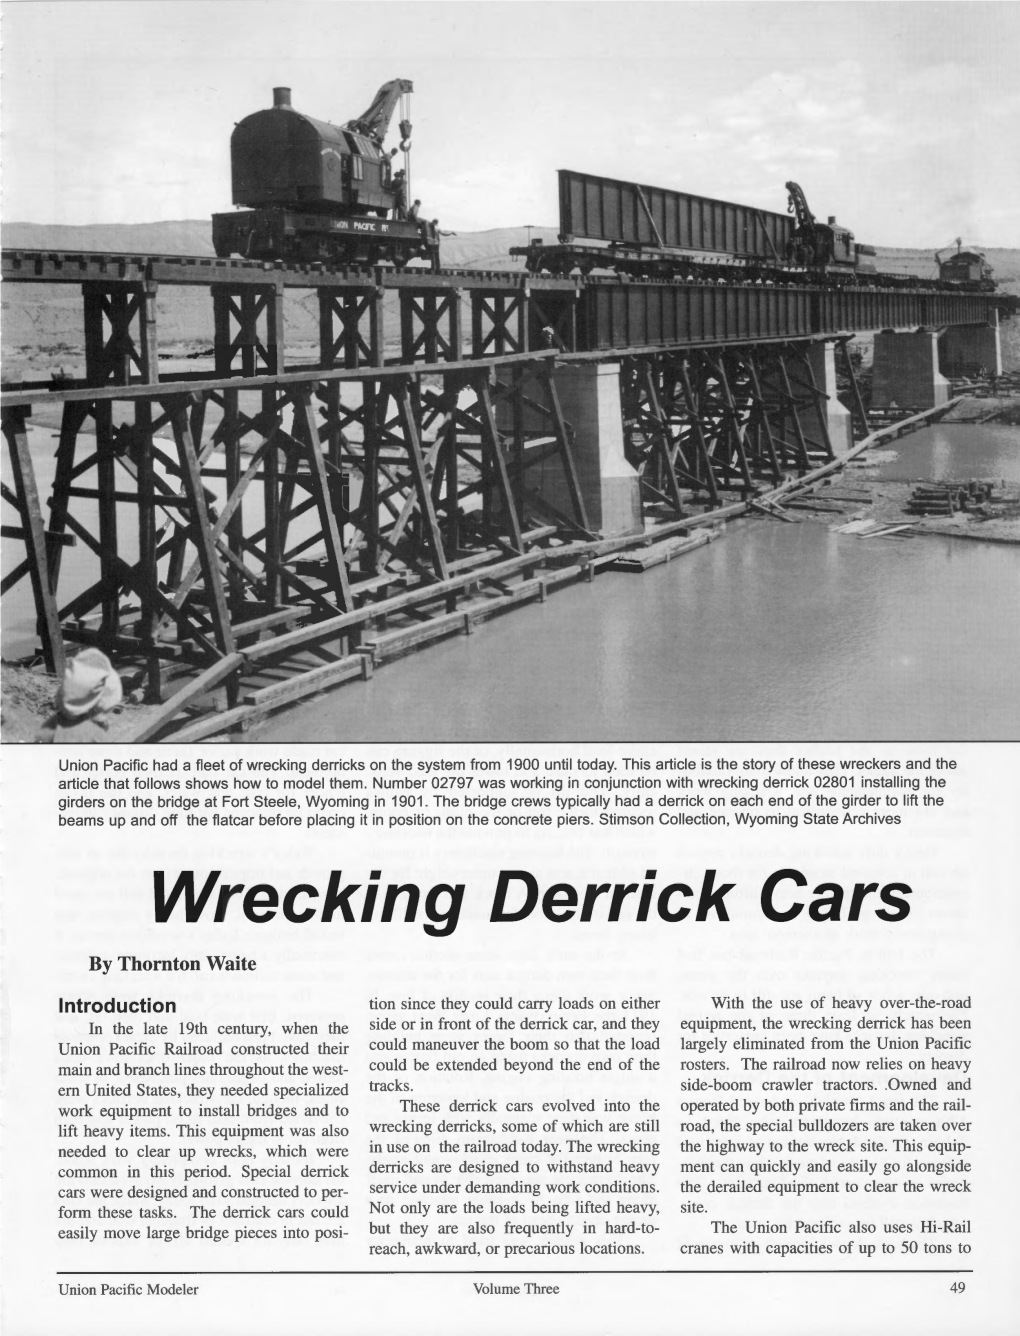 Wrecking Derrick Cars by Thornton Waite